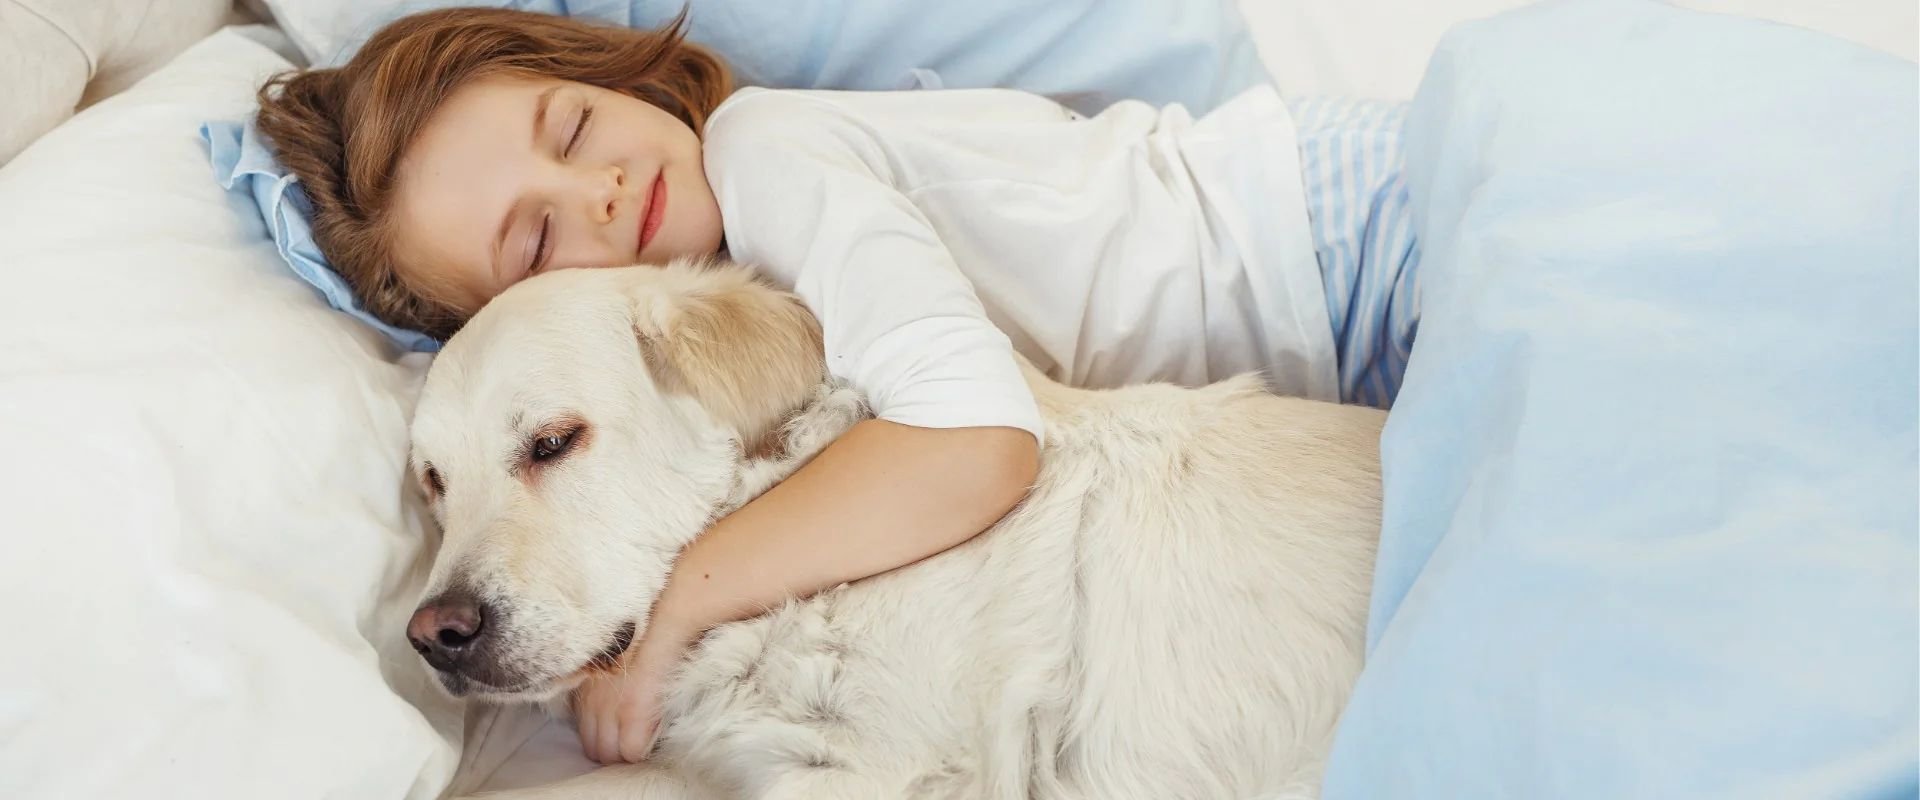 Young girl sleeping and hugging dog